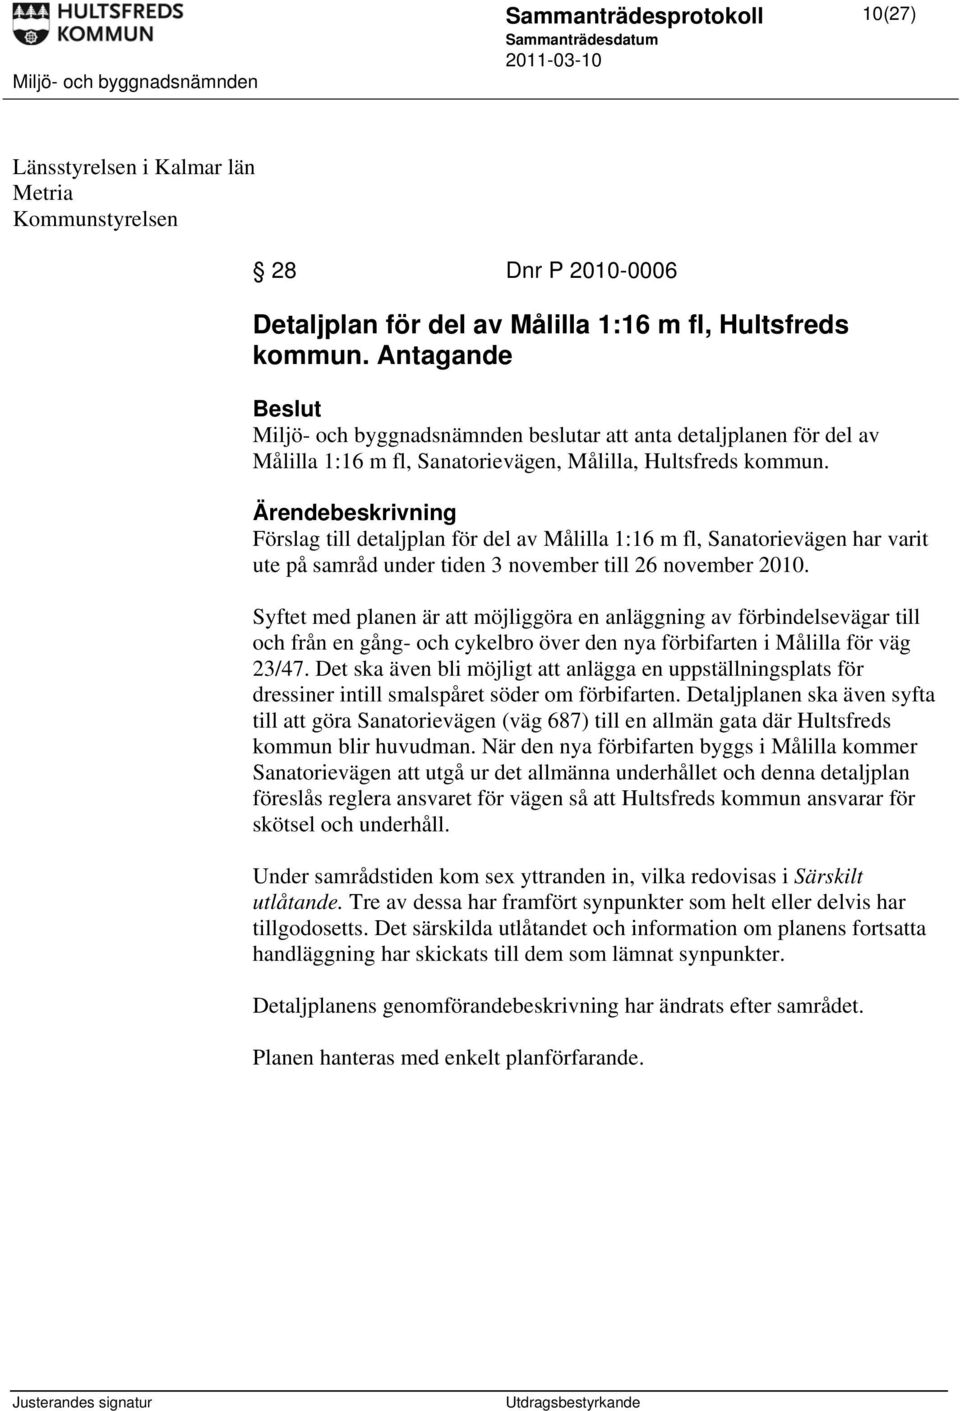 Ärendebeskrivning Förslag till detaljplan för del av Målilla 1:16 m fl, Sanatorievägen har varit ute på samråd under tiden 3 november till 26 november 2010.